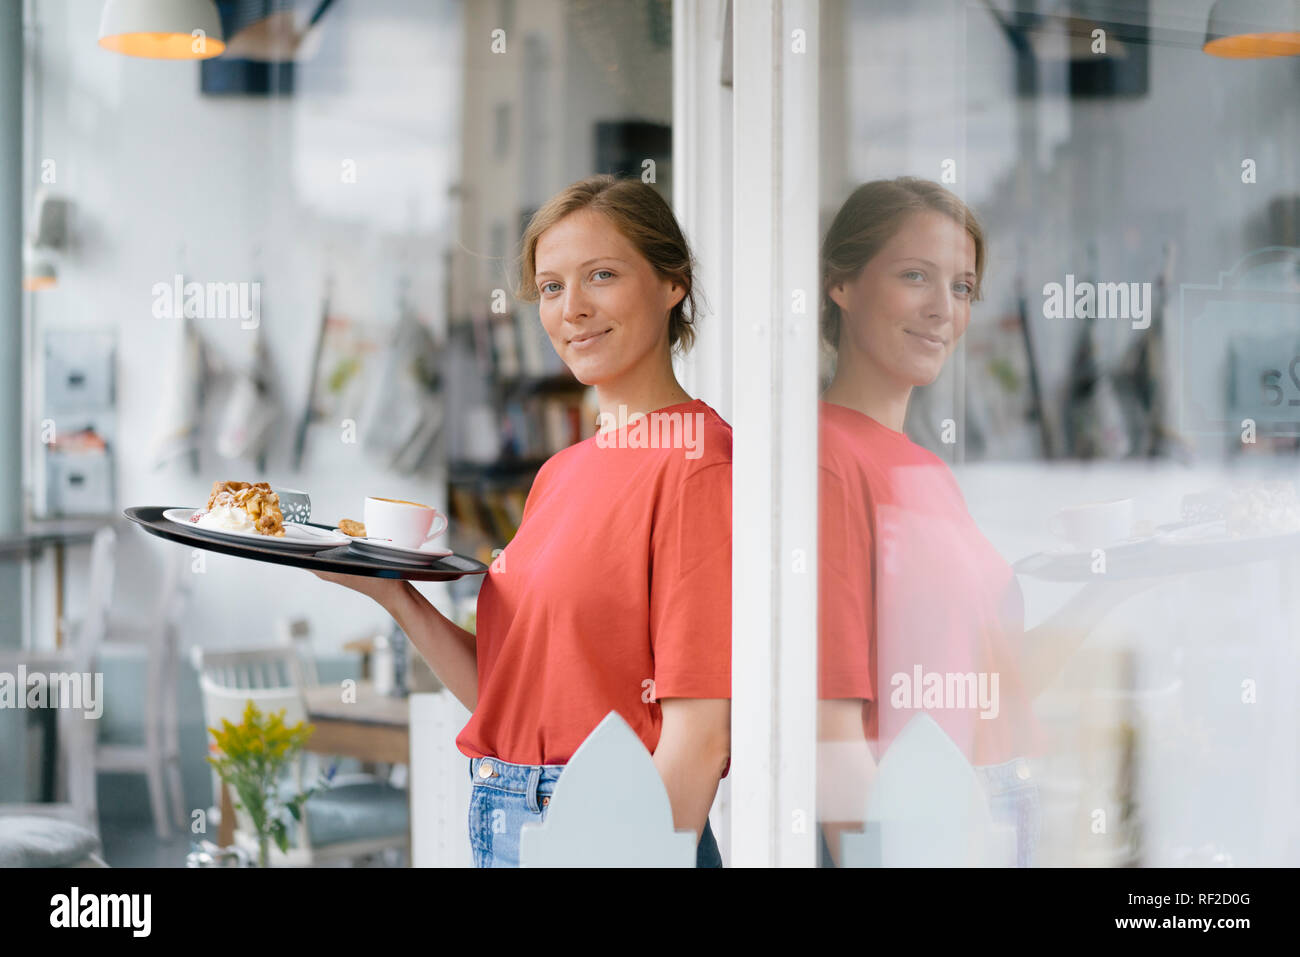 Ritratto di sorridente giovane donna che serve caffè e una fetta di torta in una caffetteria Foto Stock